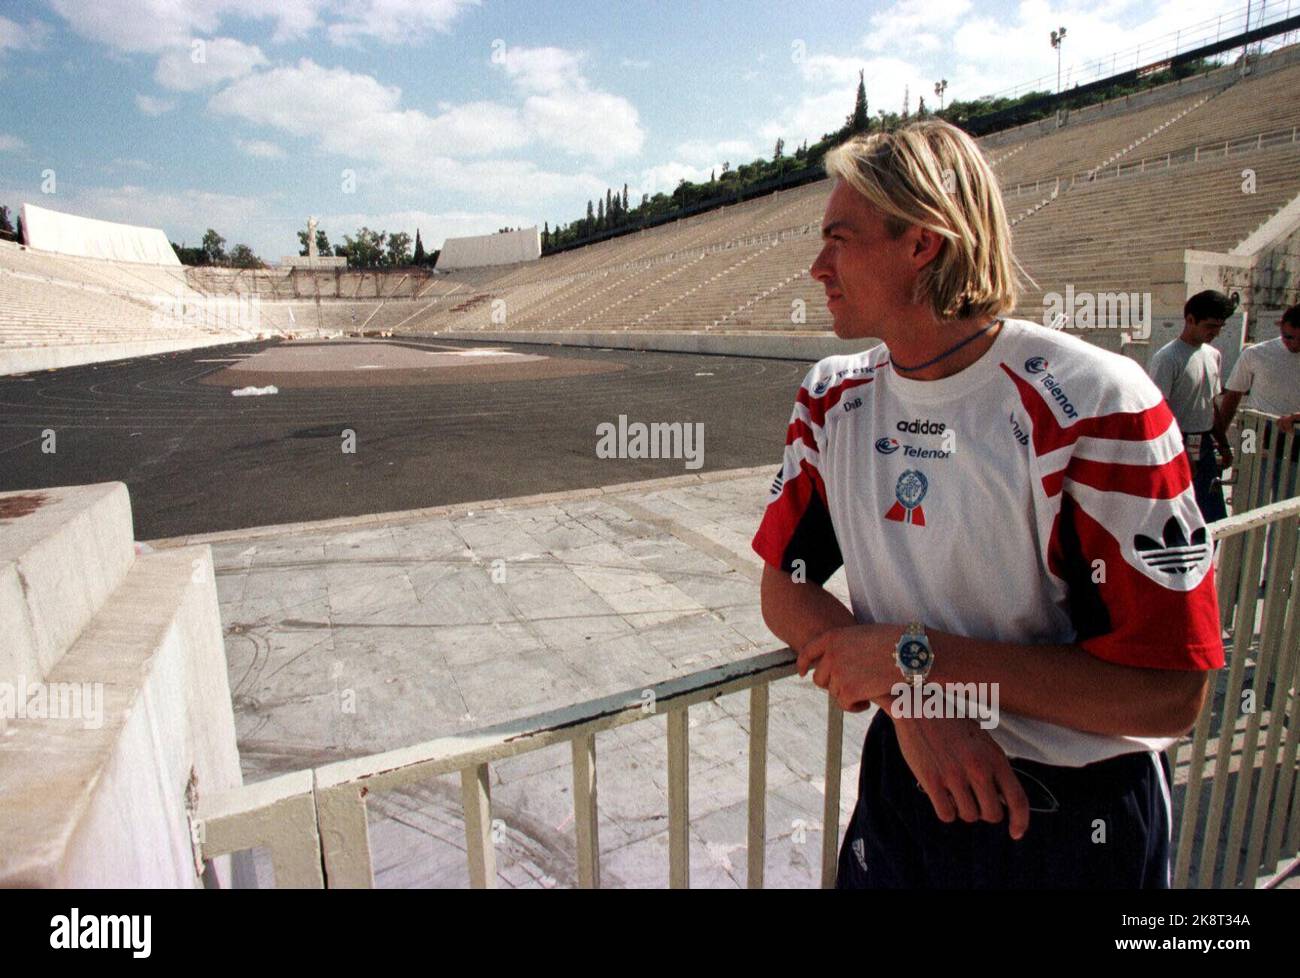 Athen, Griechenland 19970804: Geir Moen ist bereit, bei der in Athen startenden 200-Meter-Weltmeisterschaft Muskeln zu zeigen. Hier blickt Geir auf die "Wiege" der Leichtathletik, die ehrwürdige alte Panathina-Ikone, wo die Eröffnungszeremonie stattfand. Scan-Foto: Erik Johansen Stockfoto